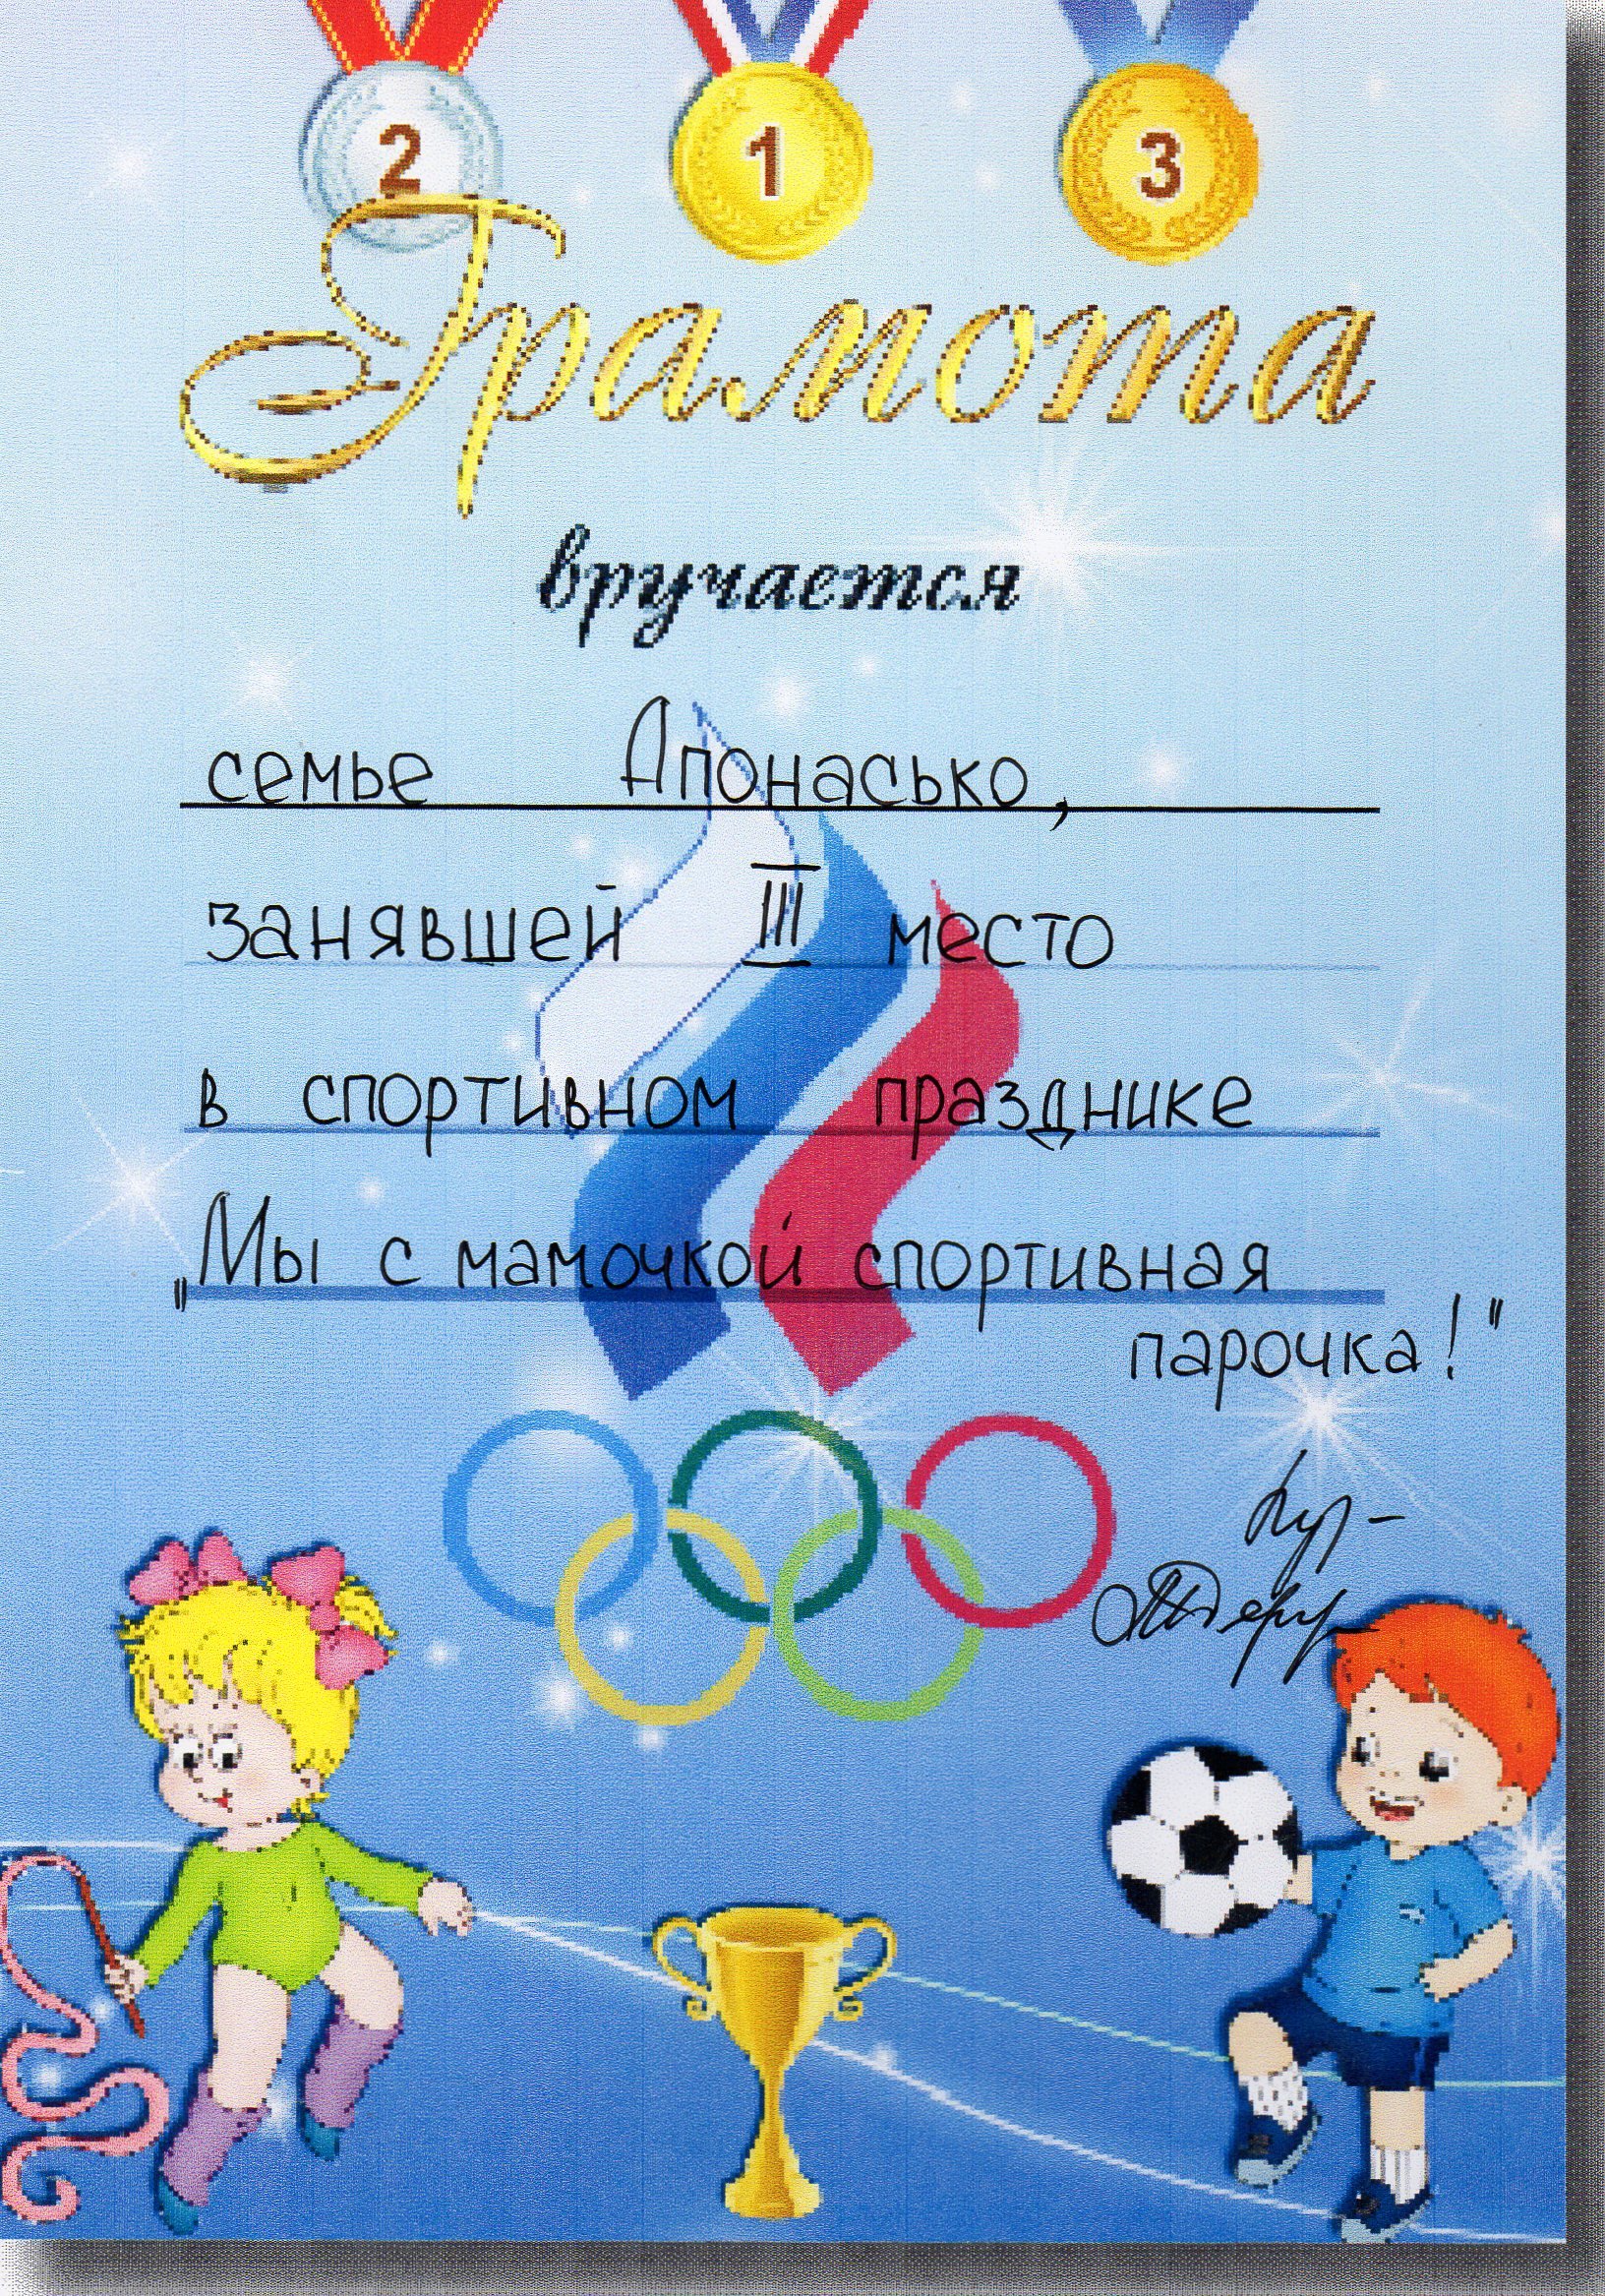 Спортивные грамоты для детей. Детские спортивные грамоты. Детские спортивные дипломы. Спортивные дипломы для детей.